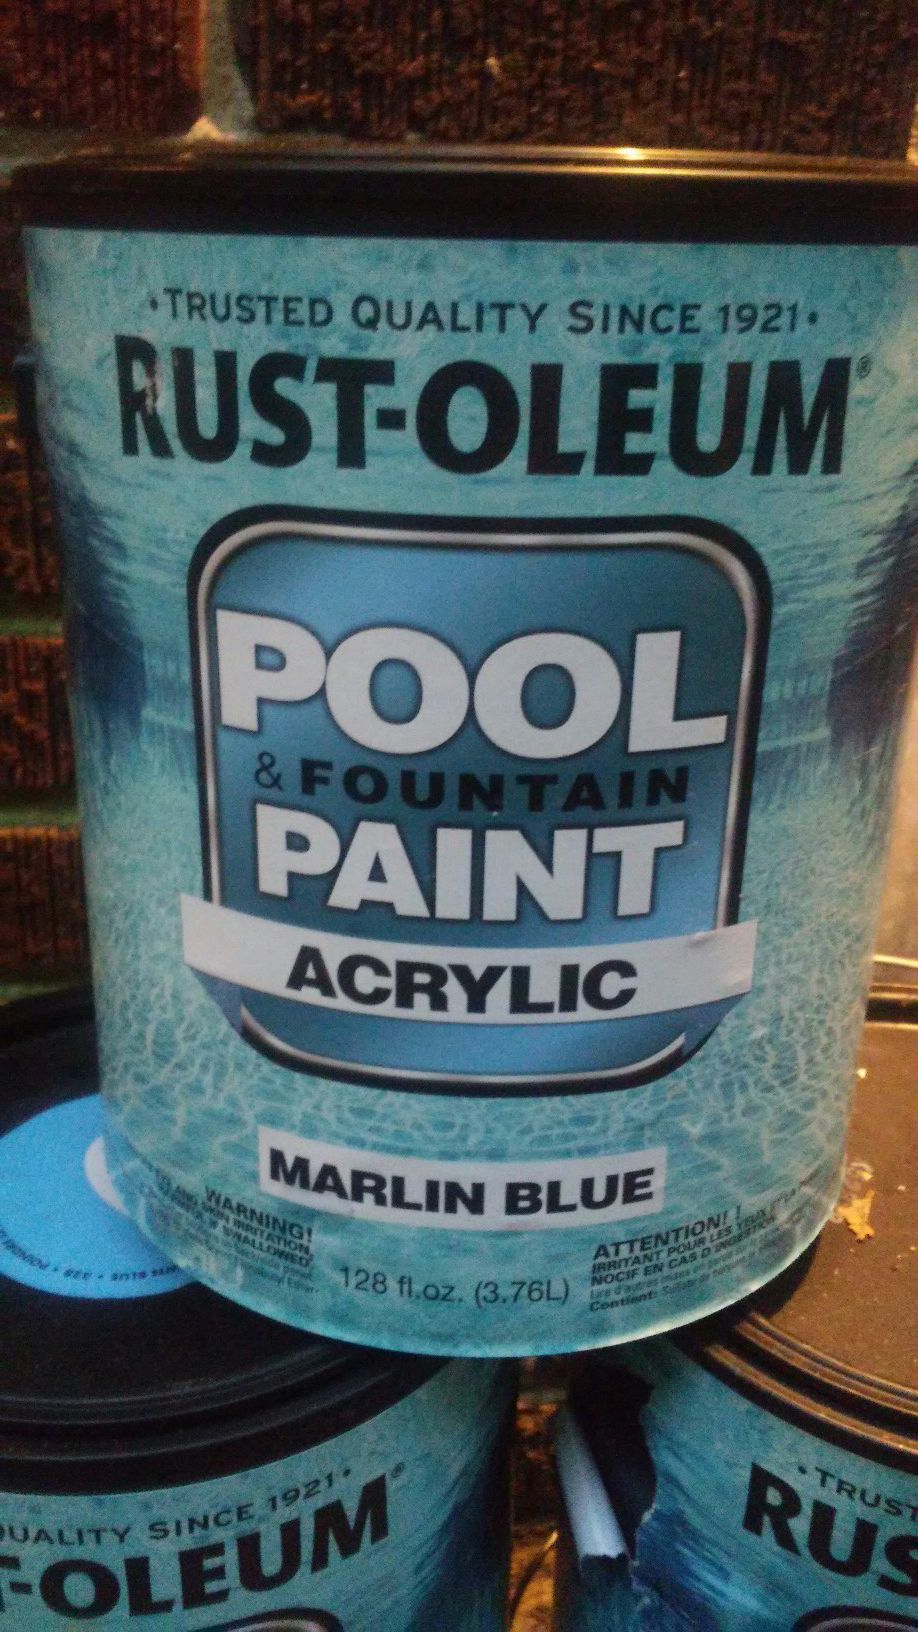 Rust-oleum Acrylic Pool Paint